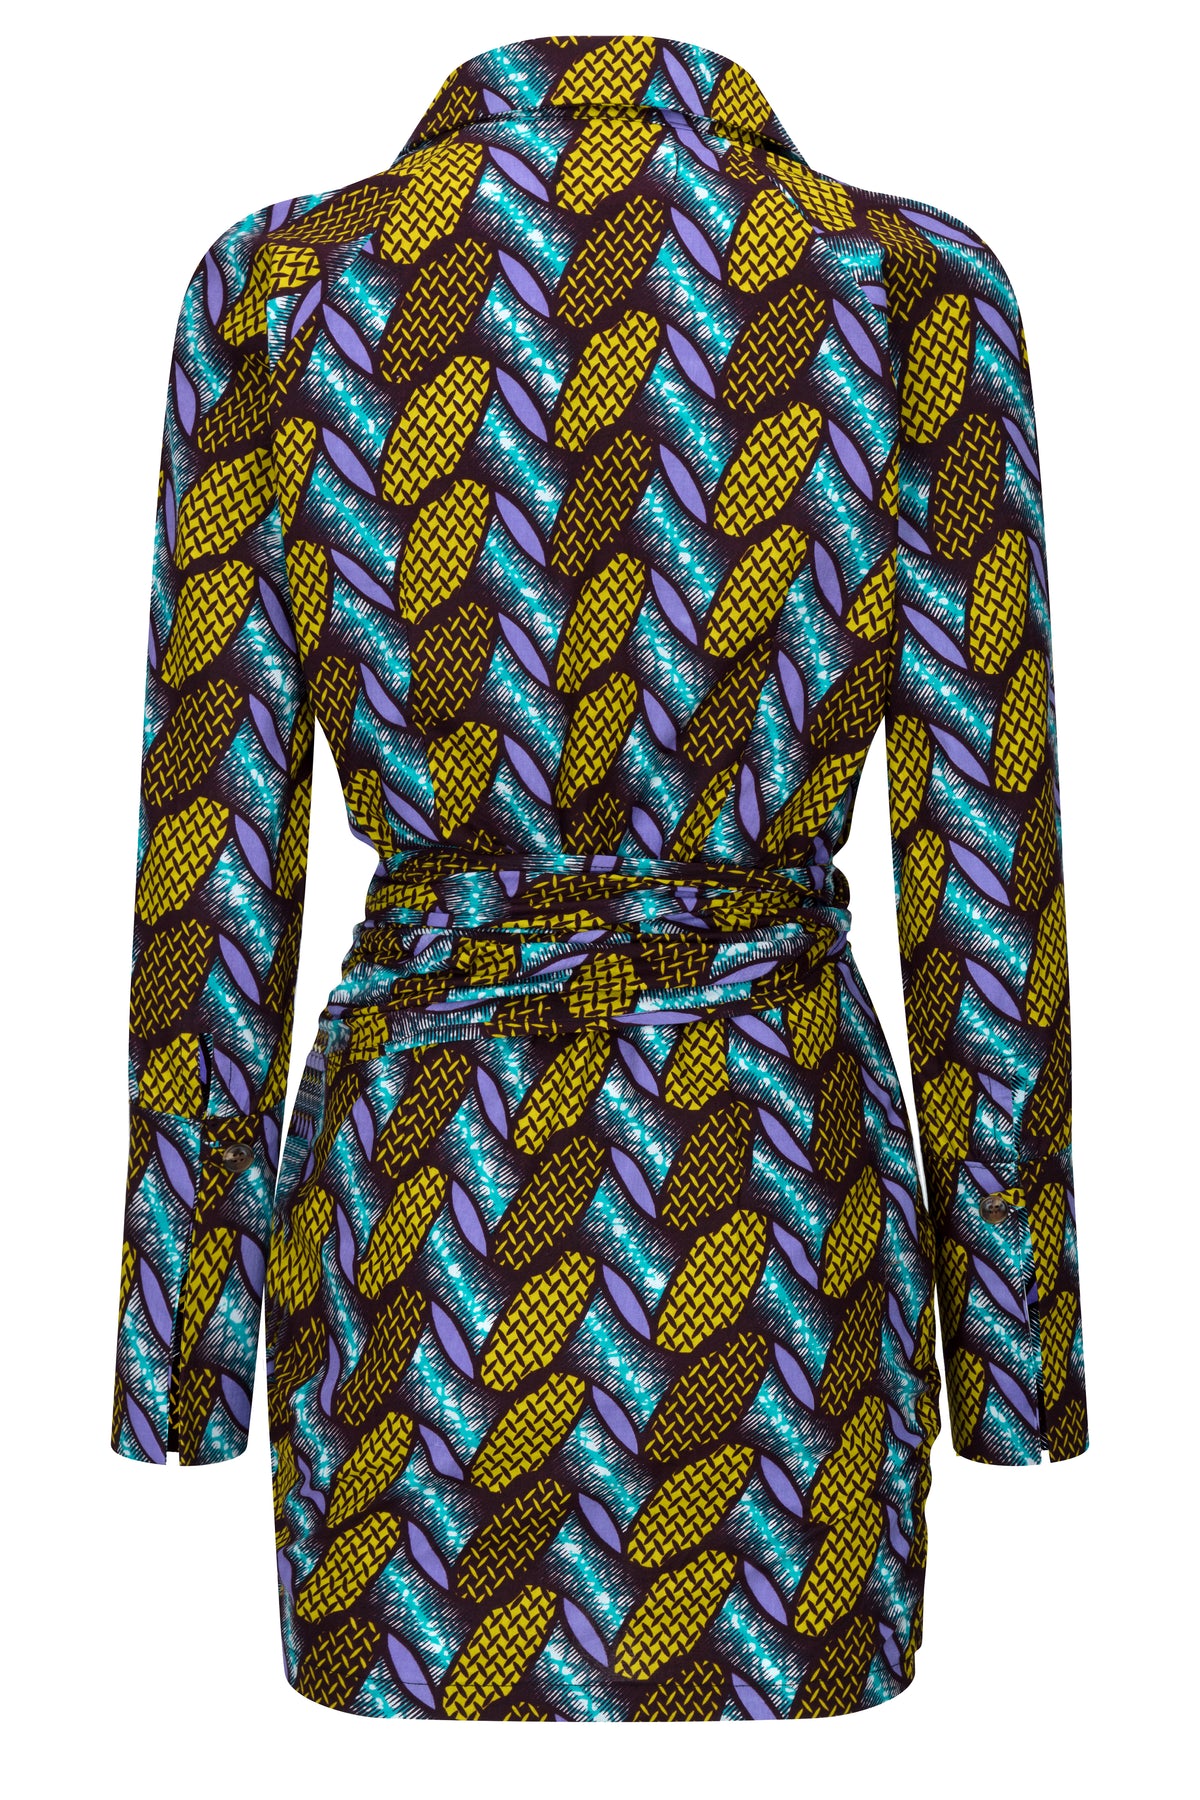 Davina wrap shirt dress - OHEMA OHENE AFRICAN INSPIRED FASHION